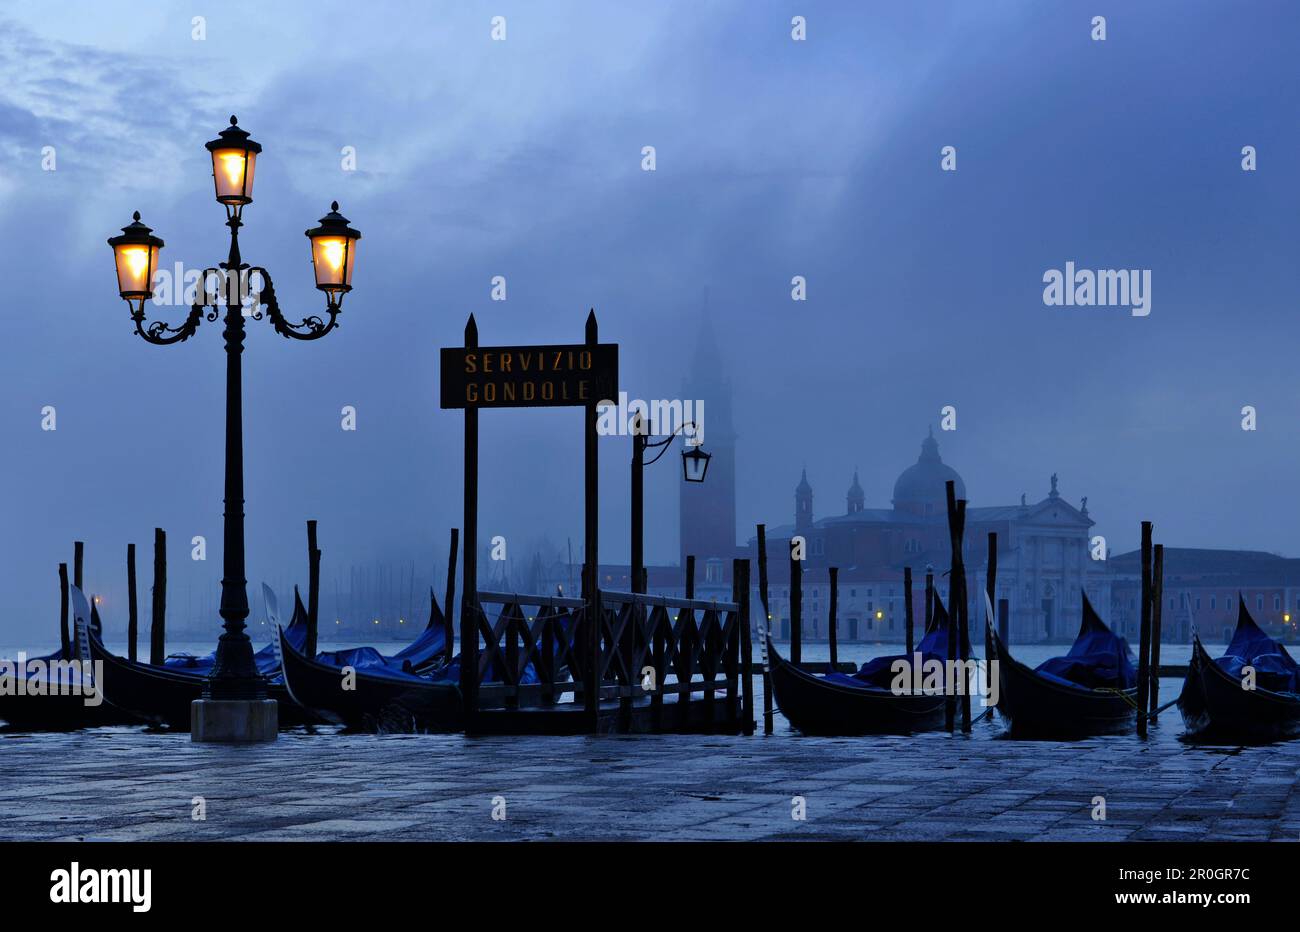 Lantern, Gondolas, Piazzetta, San Giorgio, Venice, Italy Stock Photo